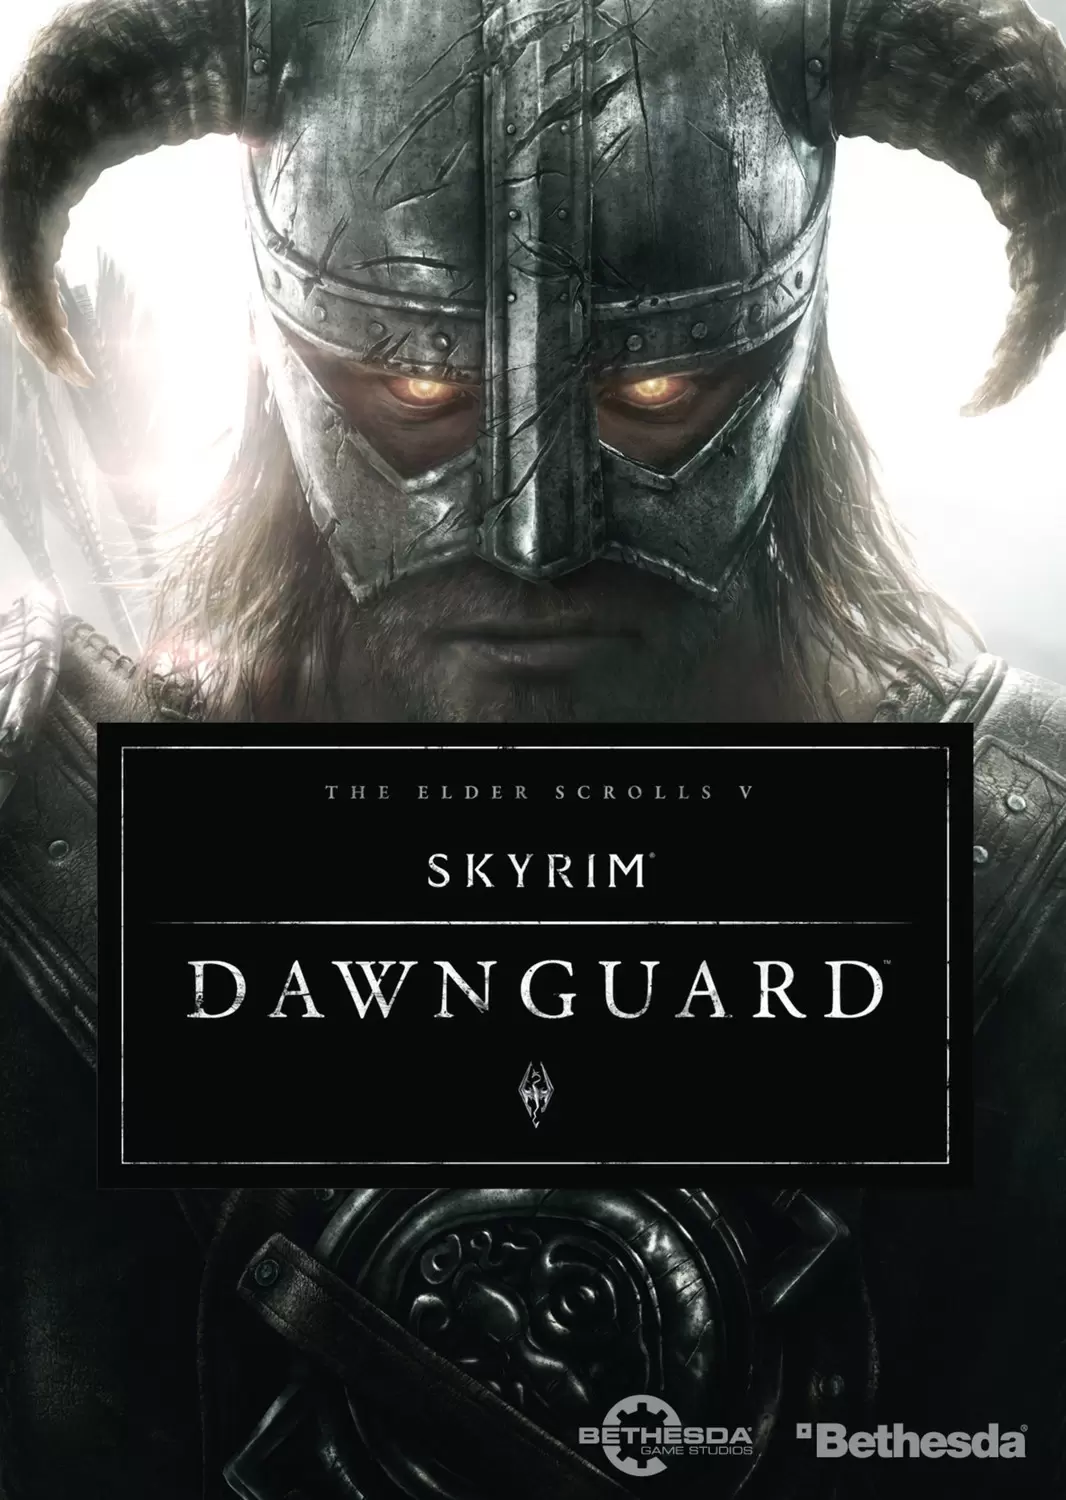 PS3 Games - The Elder Scrolls V: Skyrim – Dawnguard